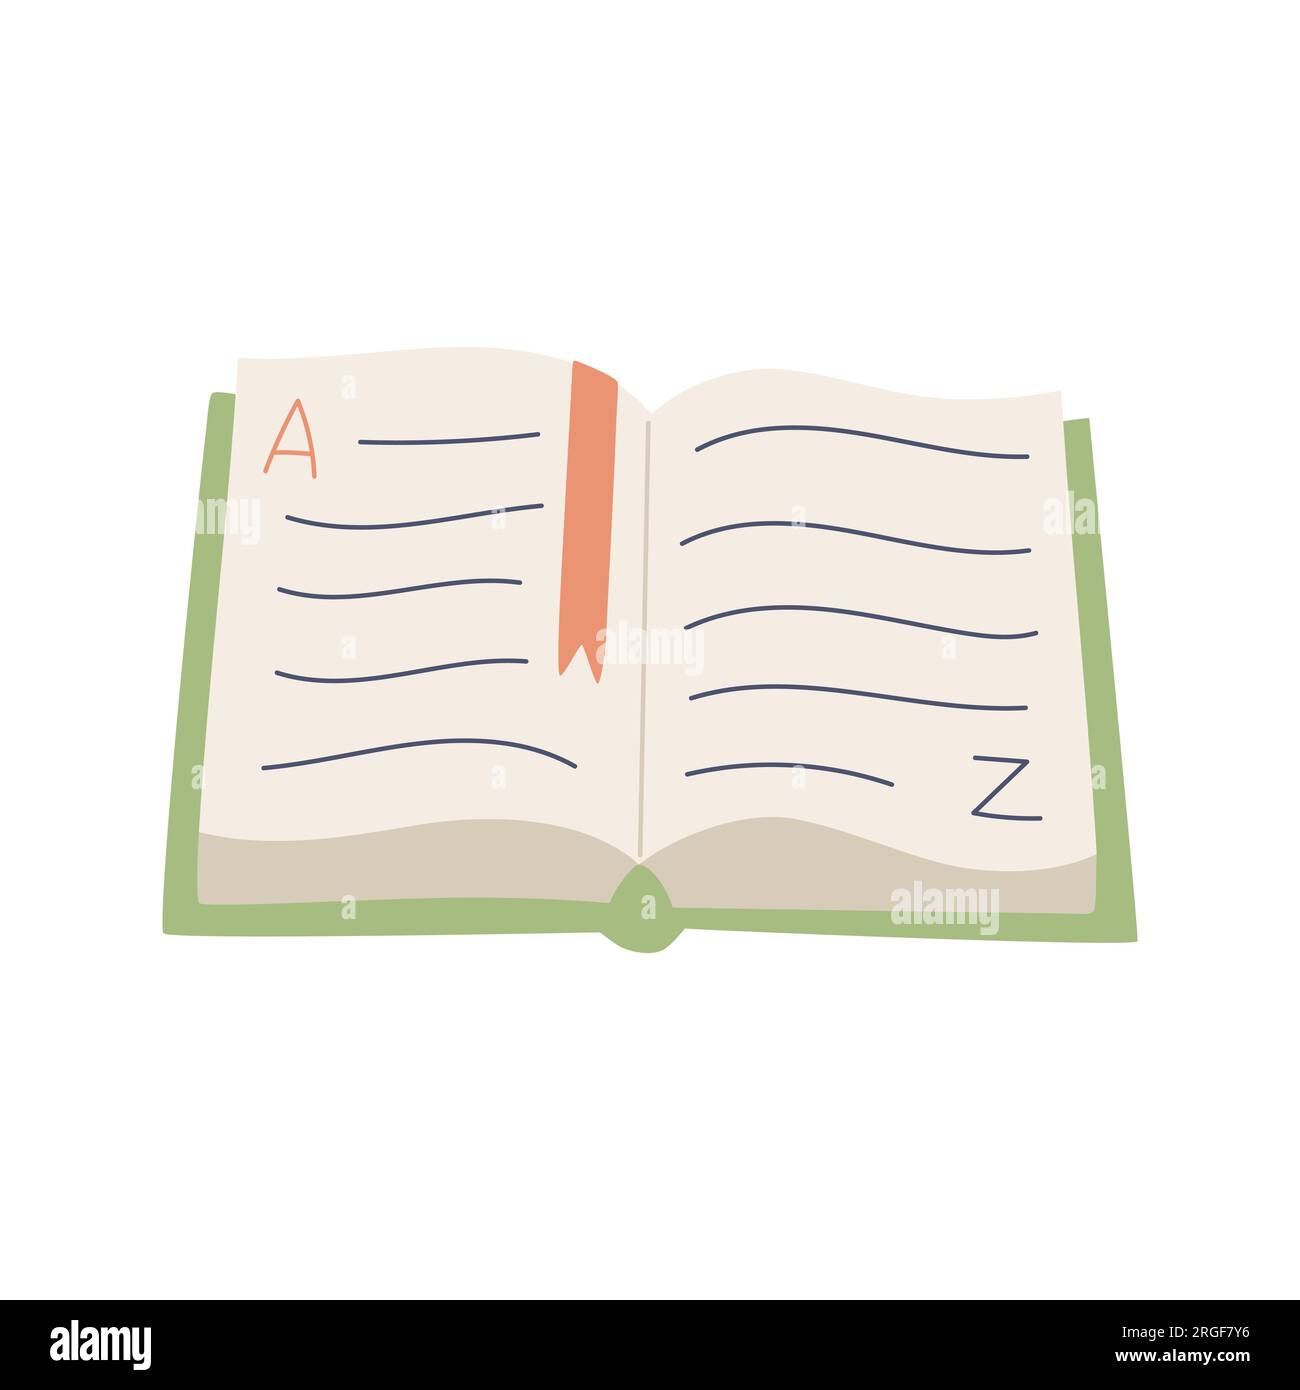 Ein offenes Buch auf dem Tisch, ein Wörterbuch mit den Buchstaben A und z. Ein Lehrbuch mit einem Lesezeichen. Farbvektordarstellung im flachen Cartoon-Stil Stock Vektor